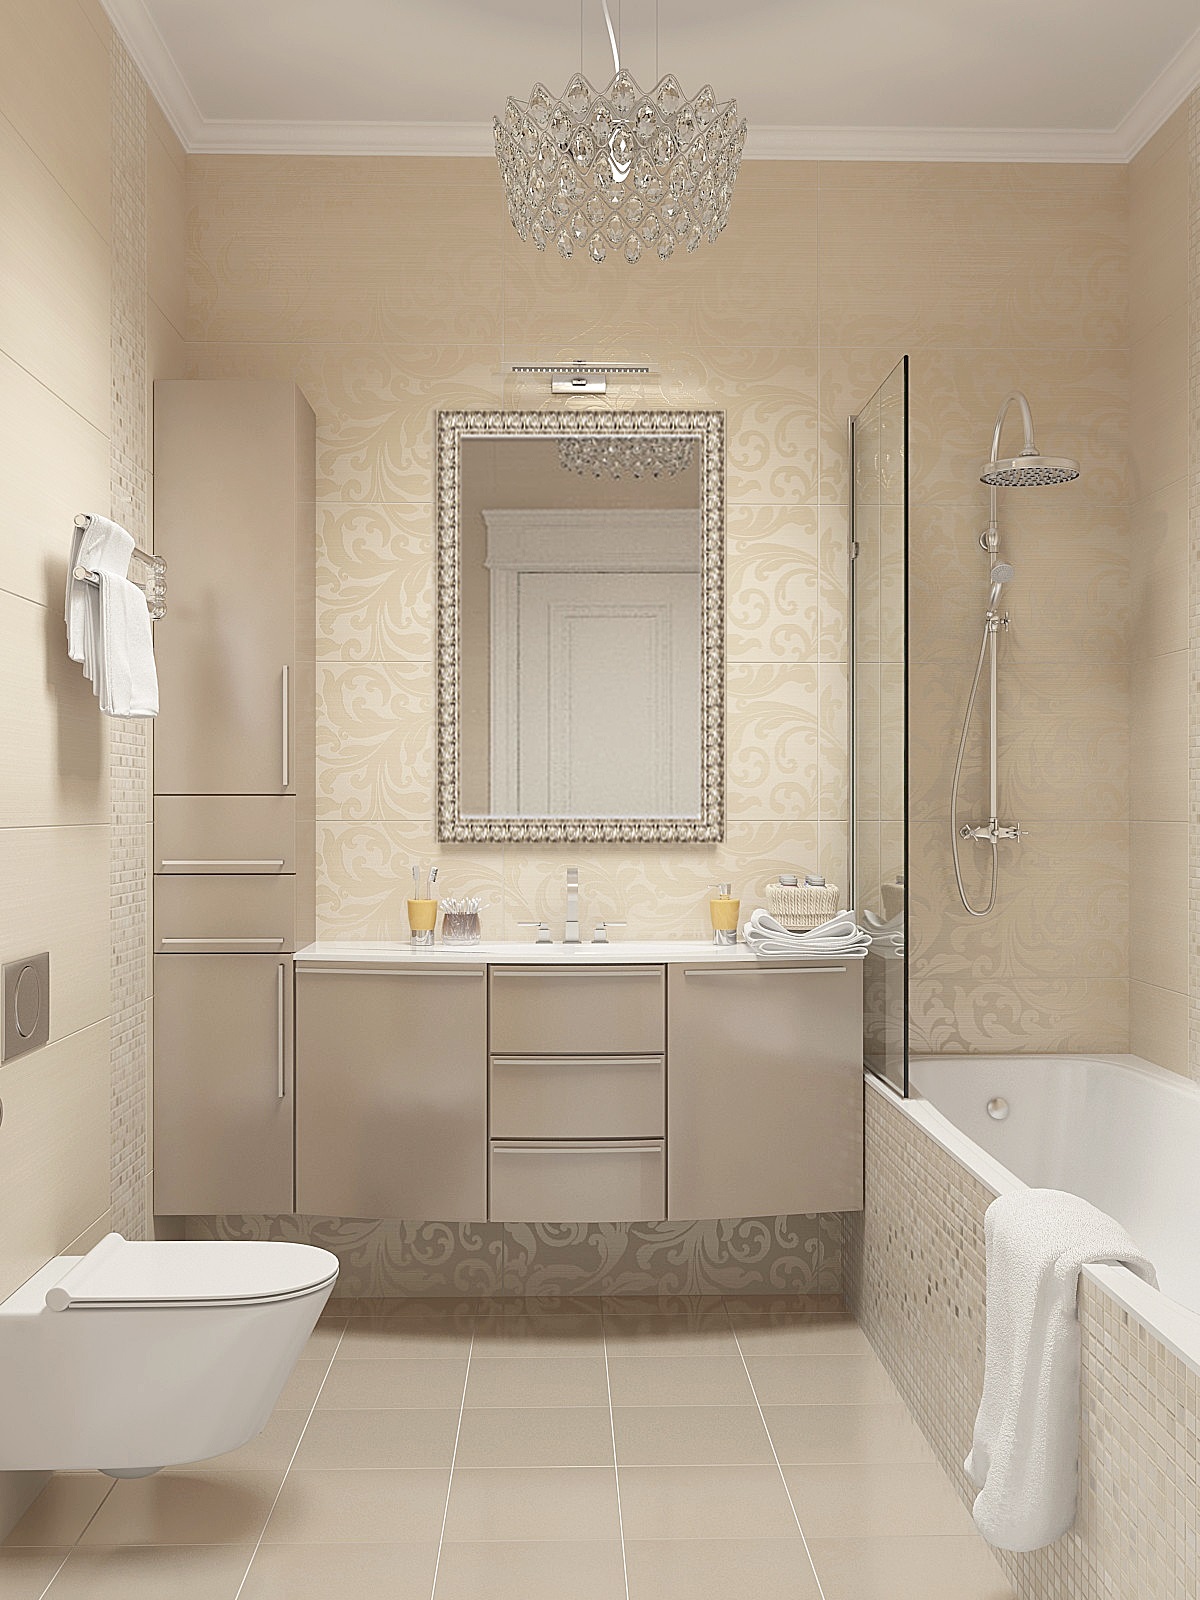 version du bel intérieur de la salle de bain de couleur beige